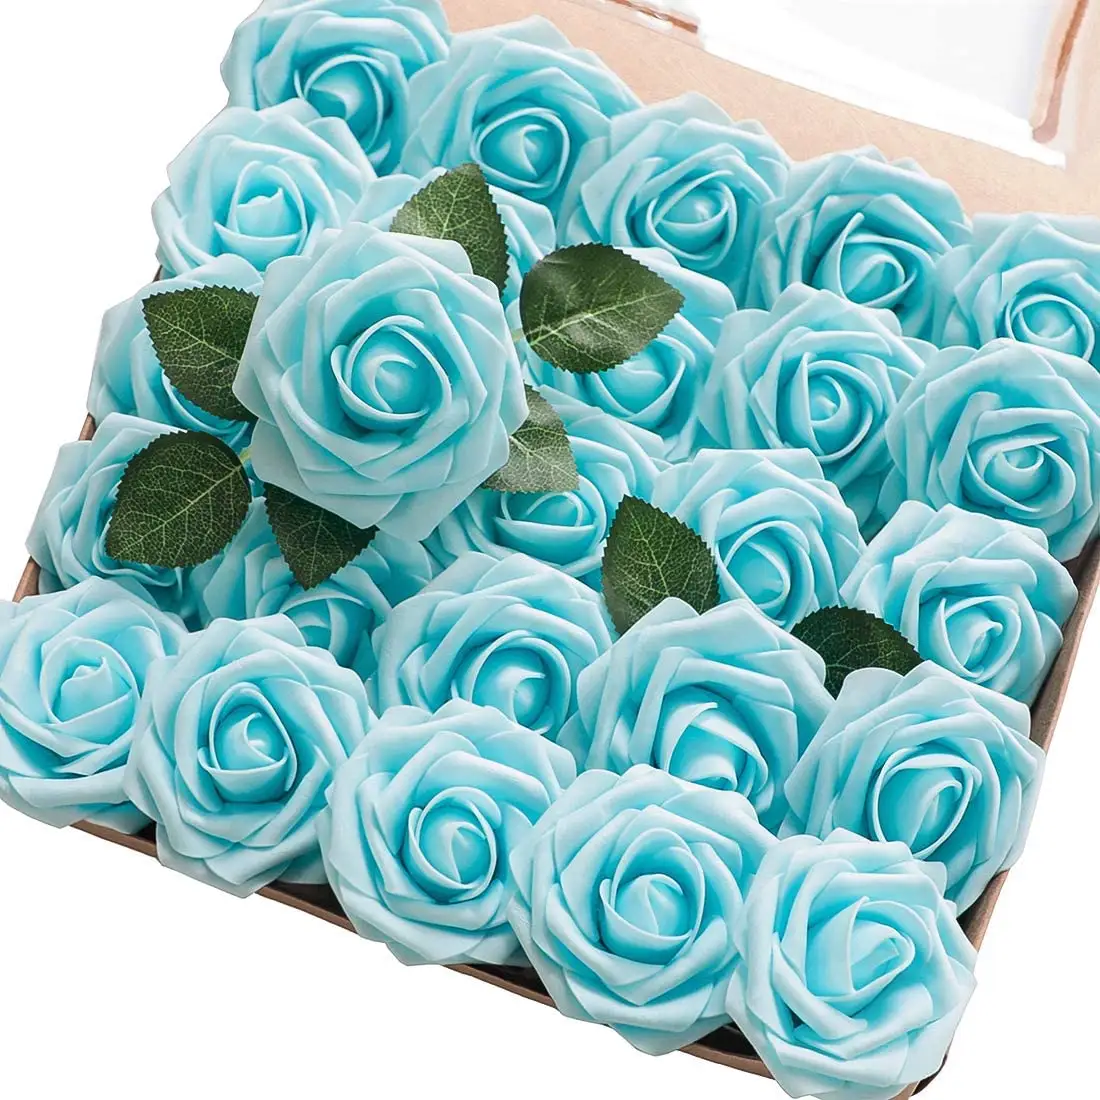 الجملة 18 ألوان 25 قطعة الحقيقي تبحث زهرة اصطناعية رغوة الورود مع ينبع ل DIY الزهور ديكور المنزل